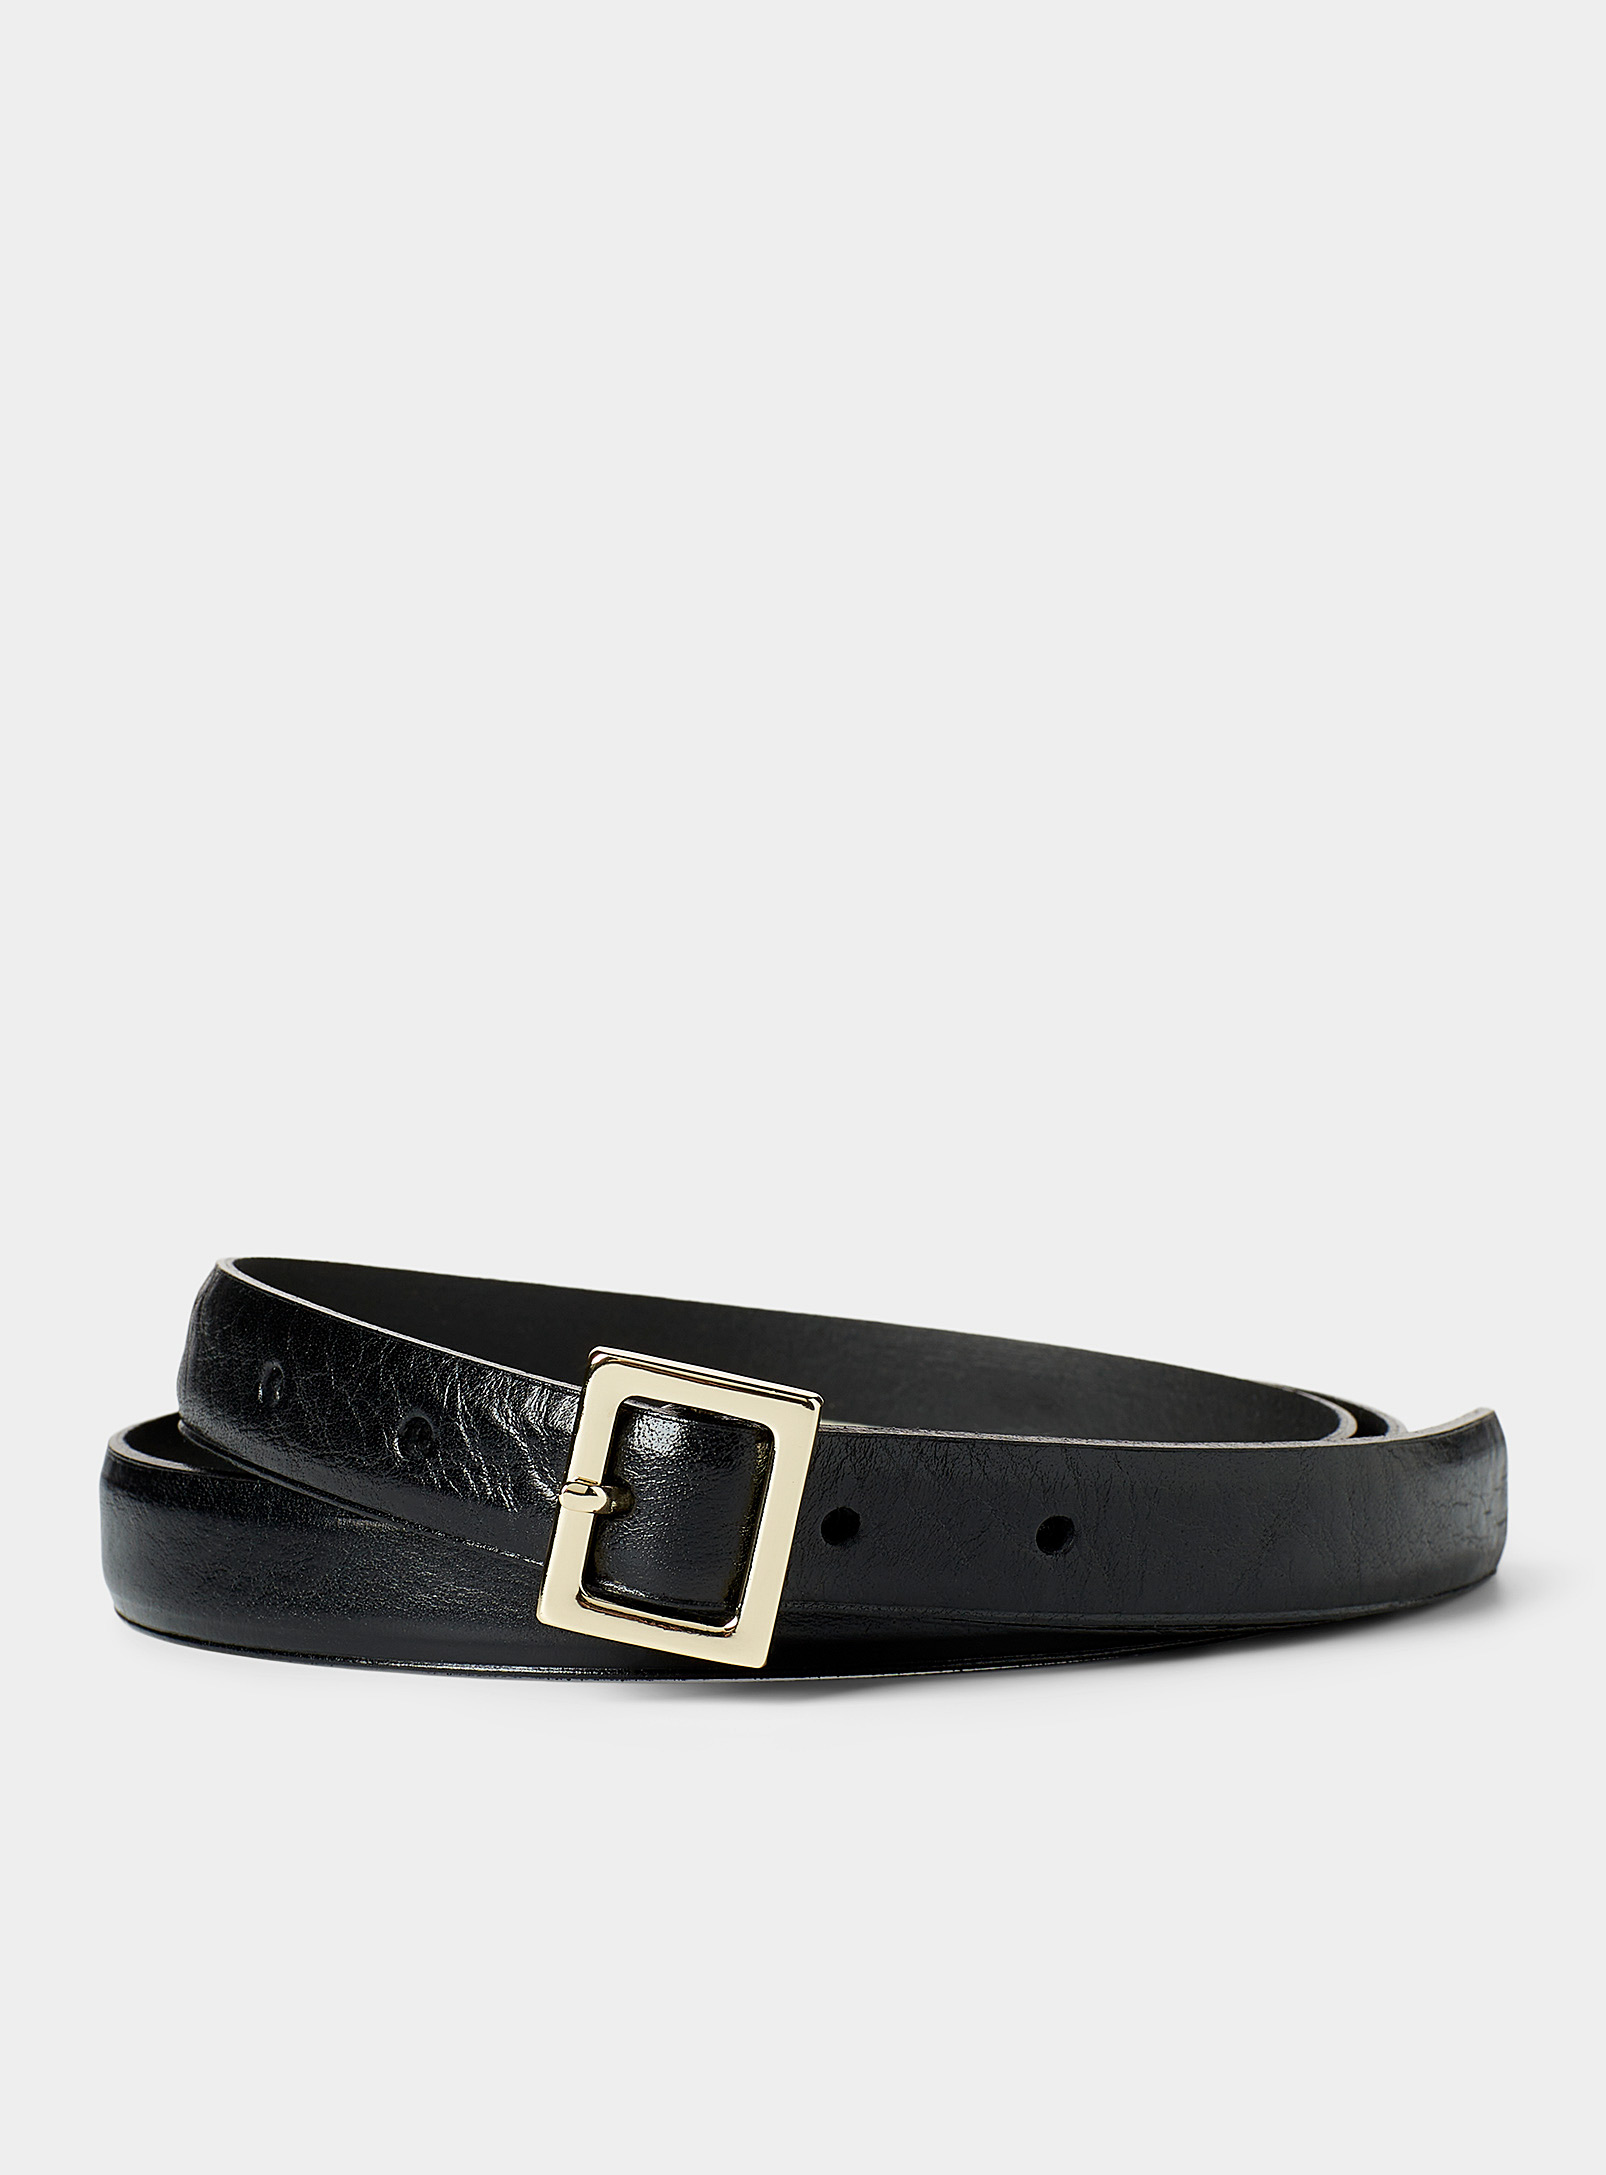 Simons - Women's Thin square mini-buckle belt